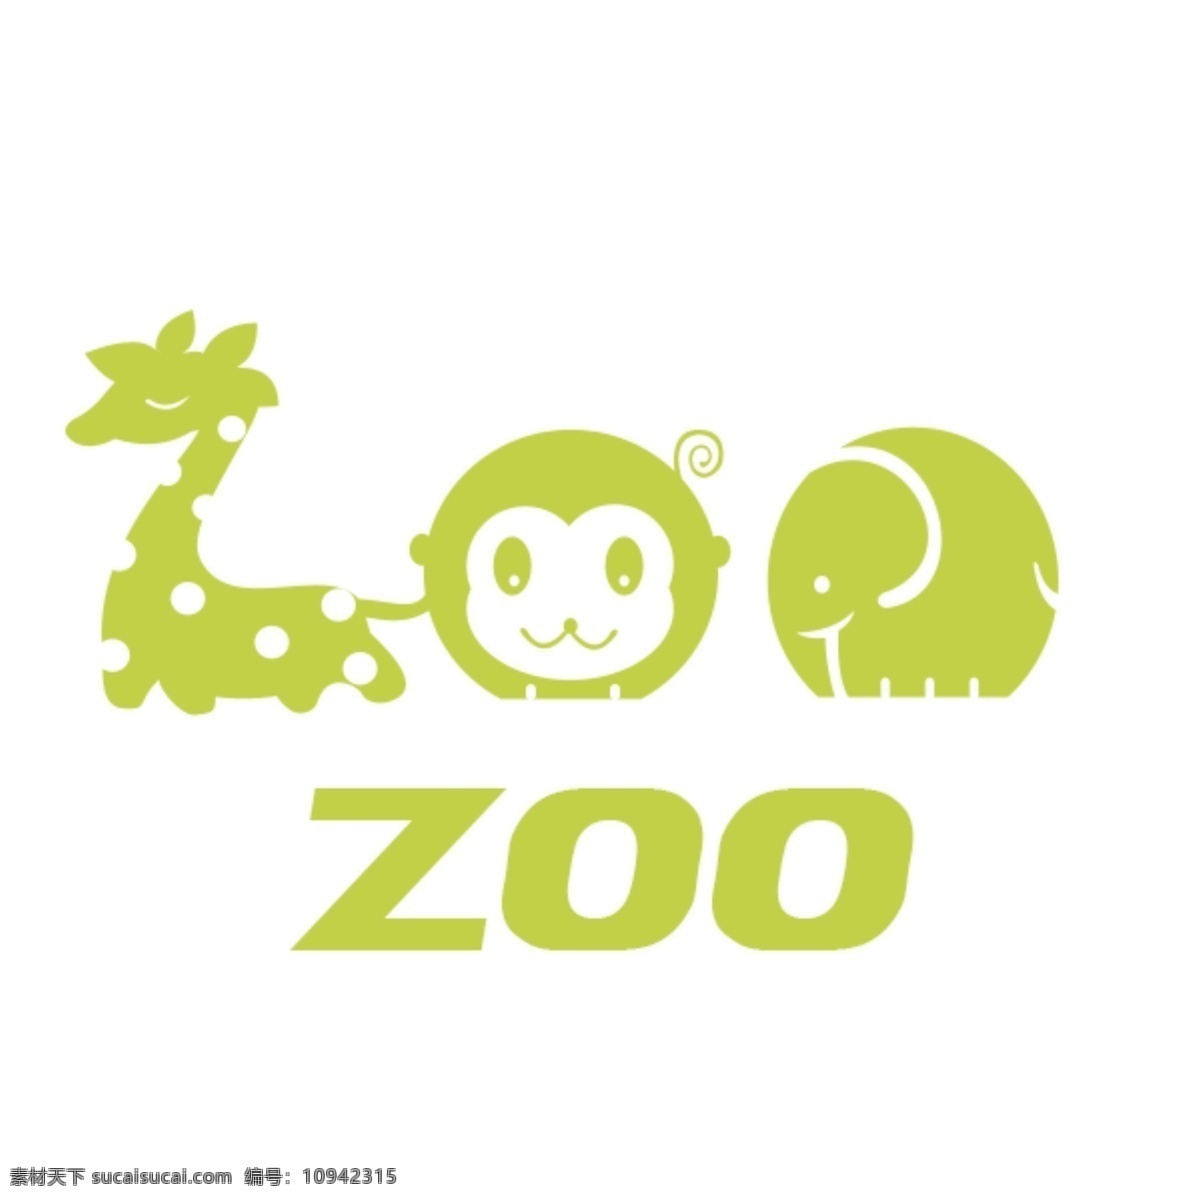 动物园 图标 logo logo矢量 标识 标志设计 动物园的标志 金融 标志 动物 动物园矢量 原创设计 其他原创设计